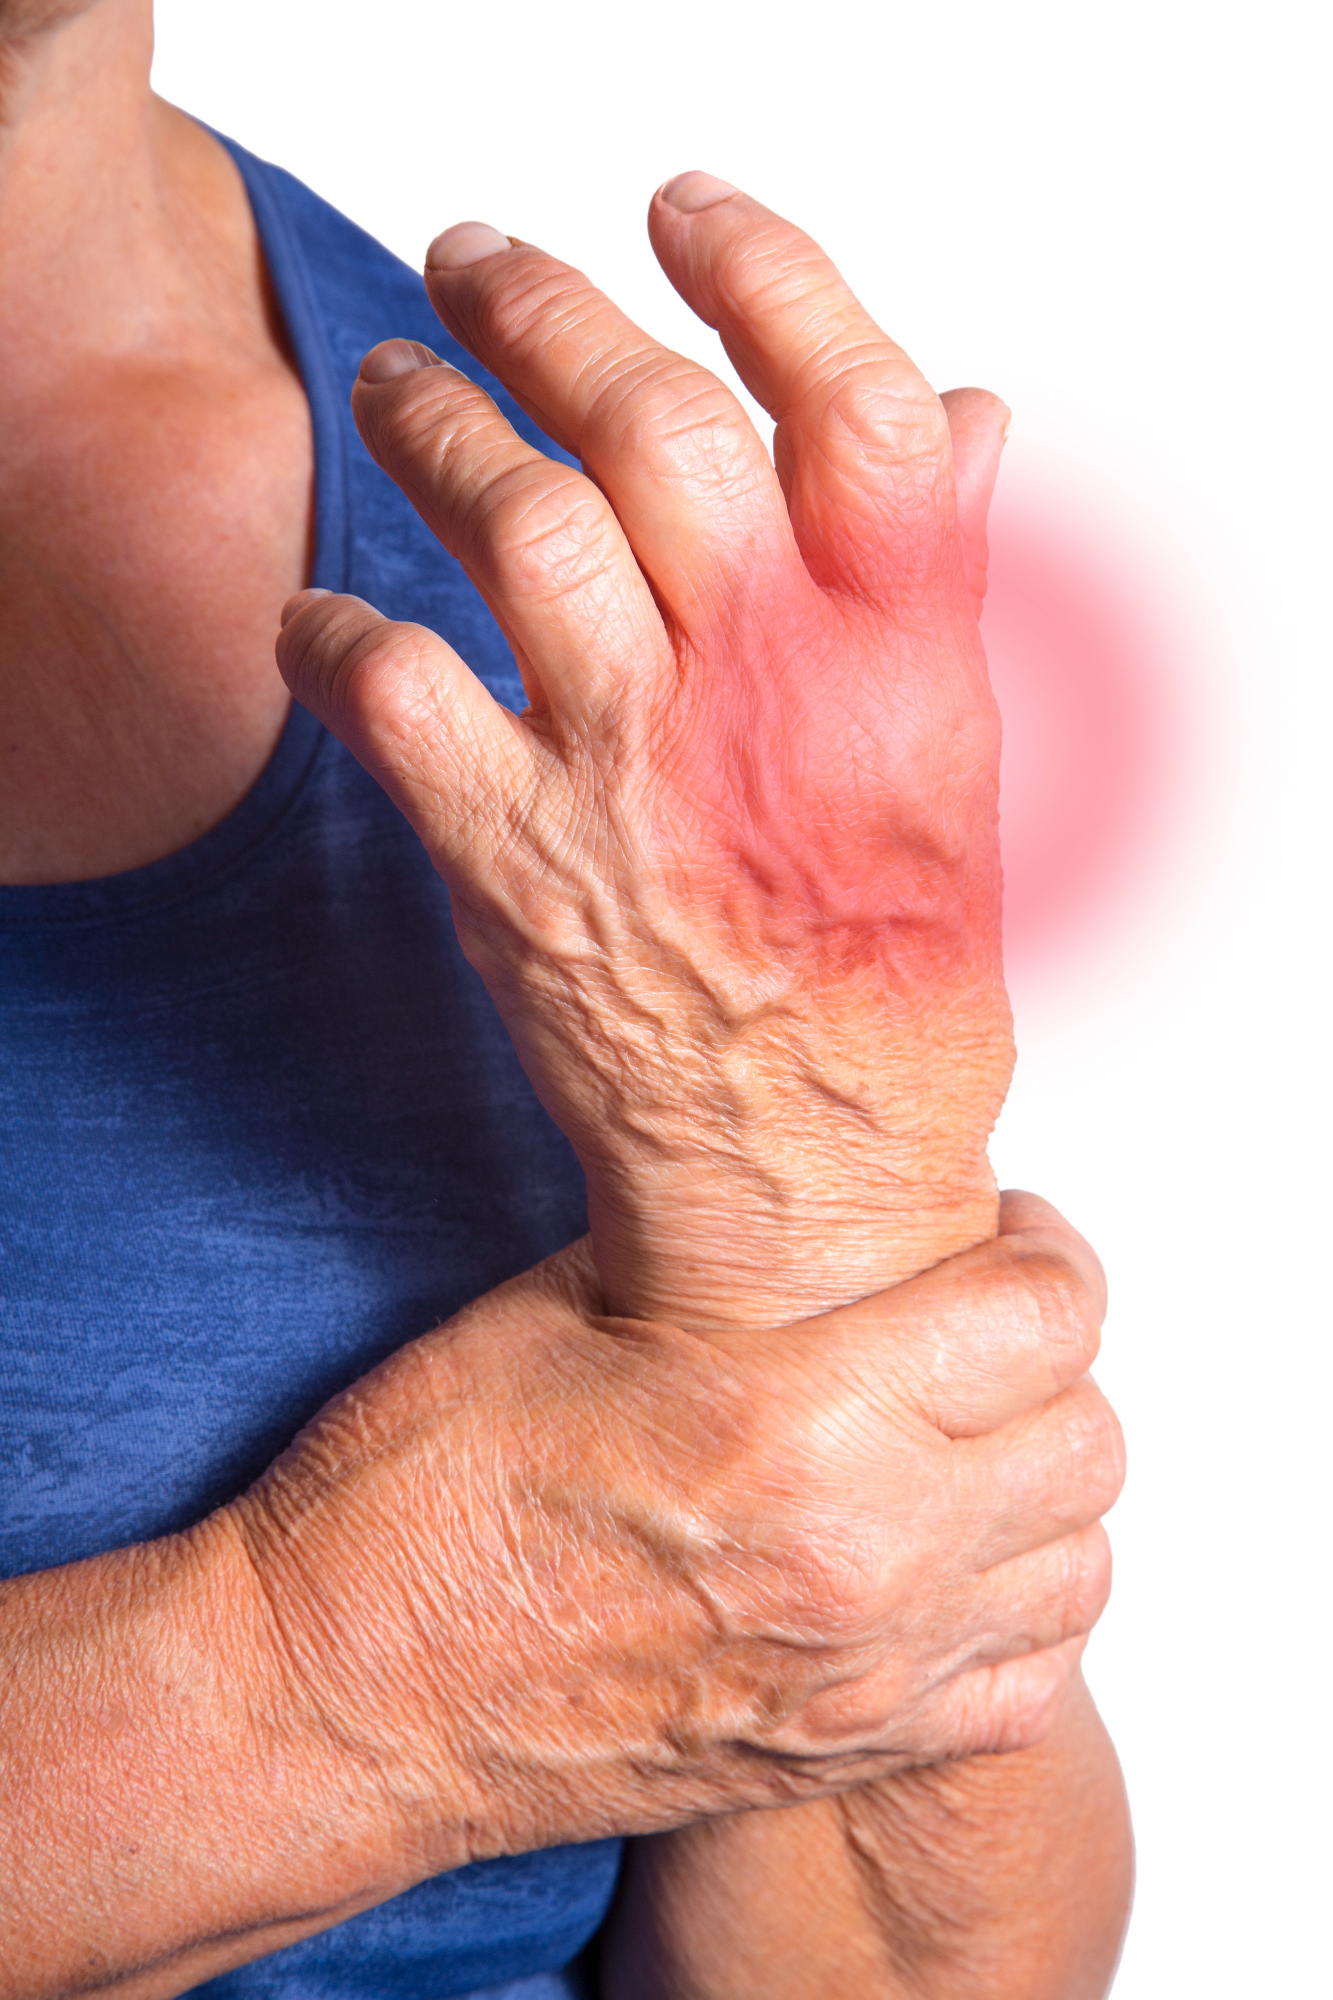 Revmatoidni artritis je precej zakomplicirana zadeva